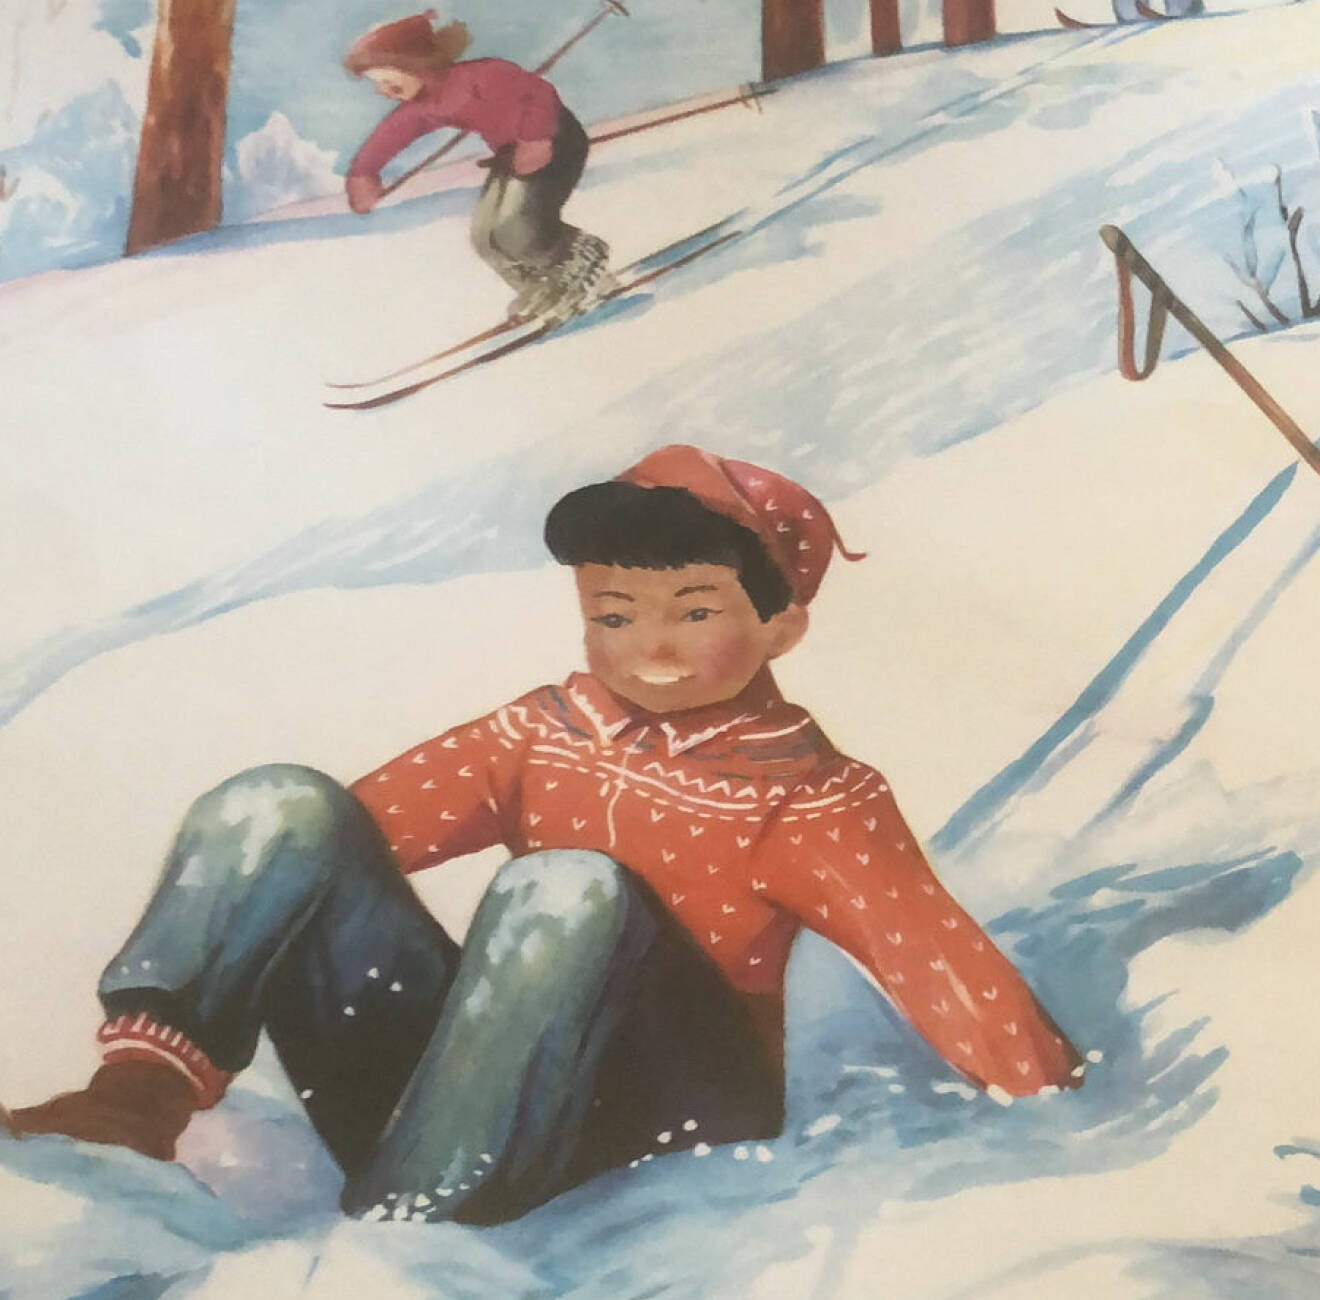 Ommålad kalenderbild. En pojke med brun hy har ramlat och sitter i en snöig backe. Bakom honom åker en flicka förbi på skidor.